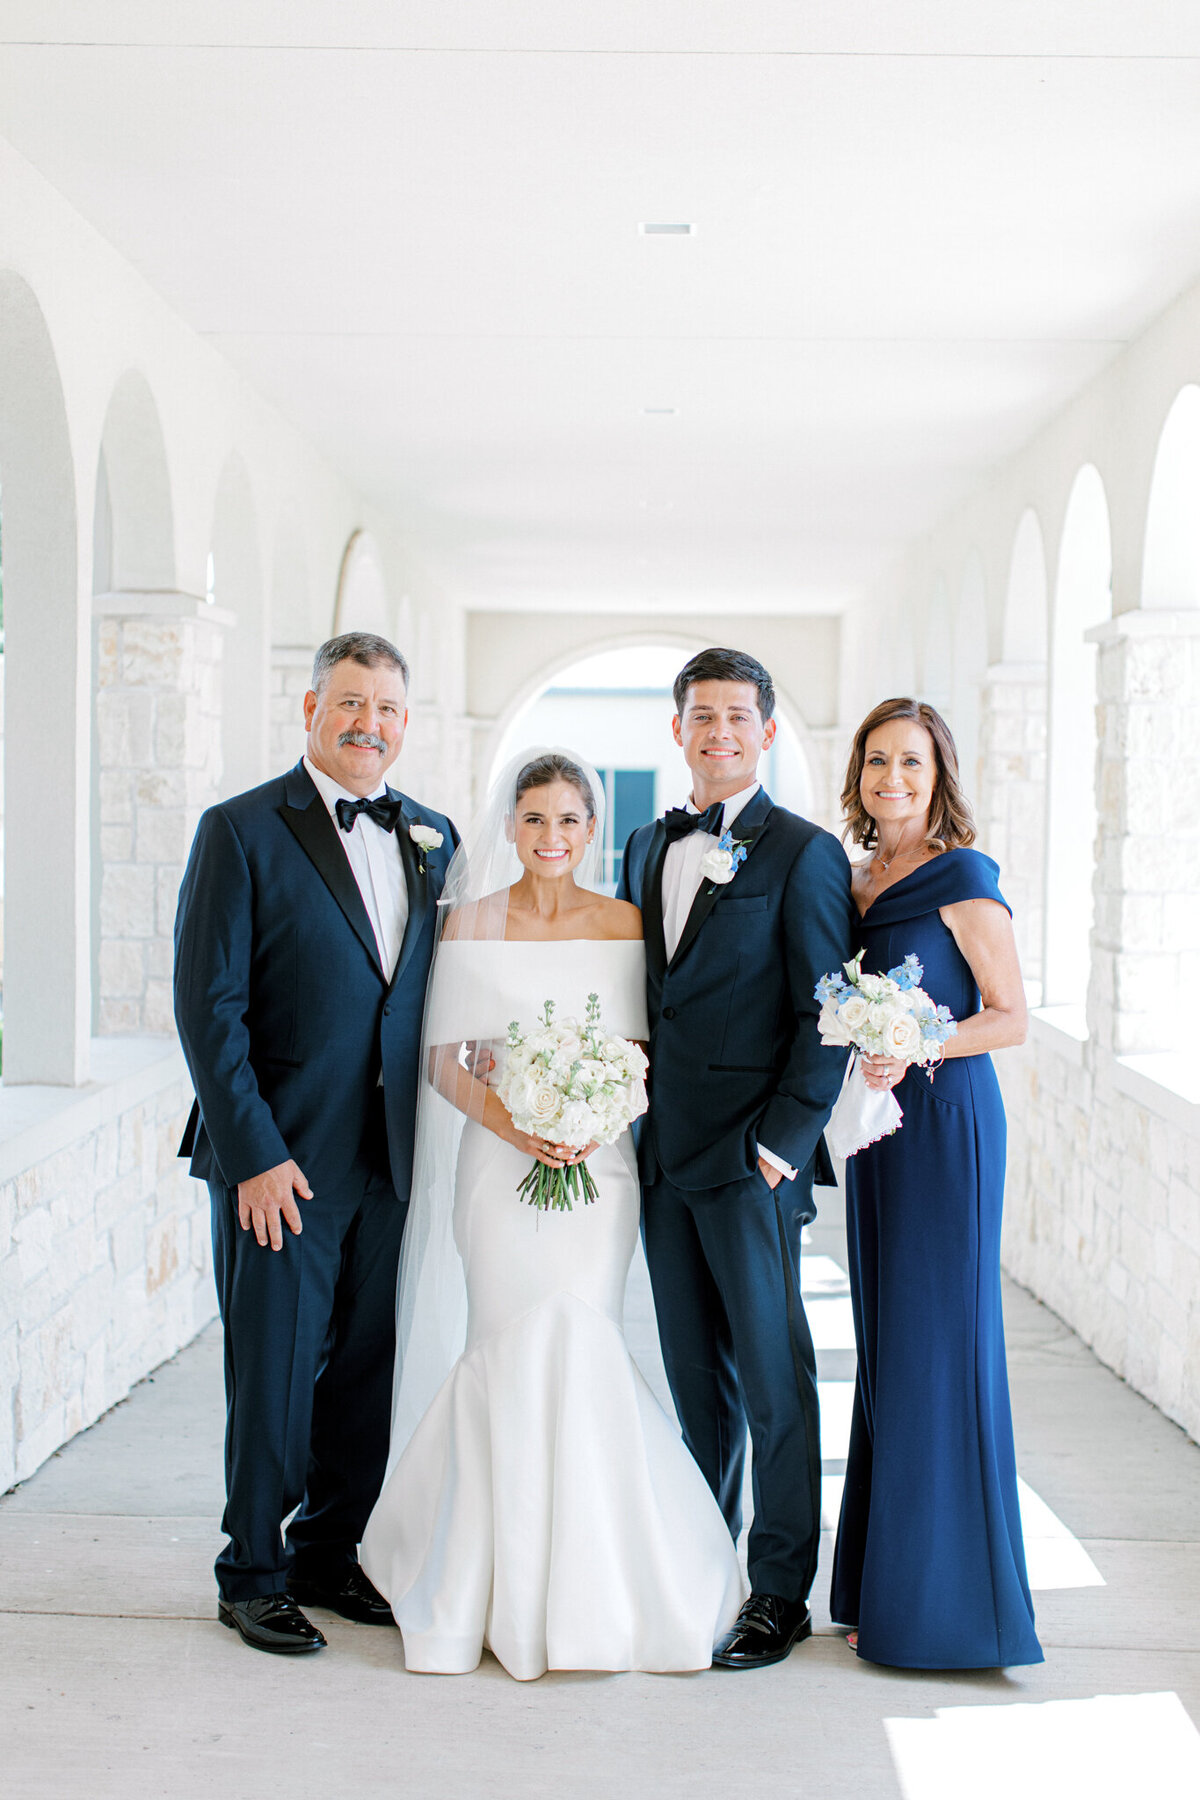 Annie & Logan's Wedding | Dallas Wedding Photographer | Sami Kathryn Photography-123